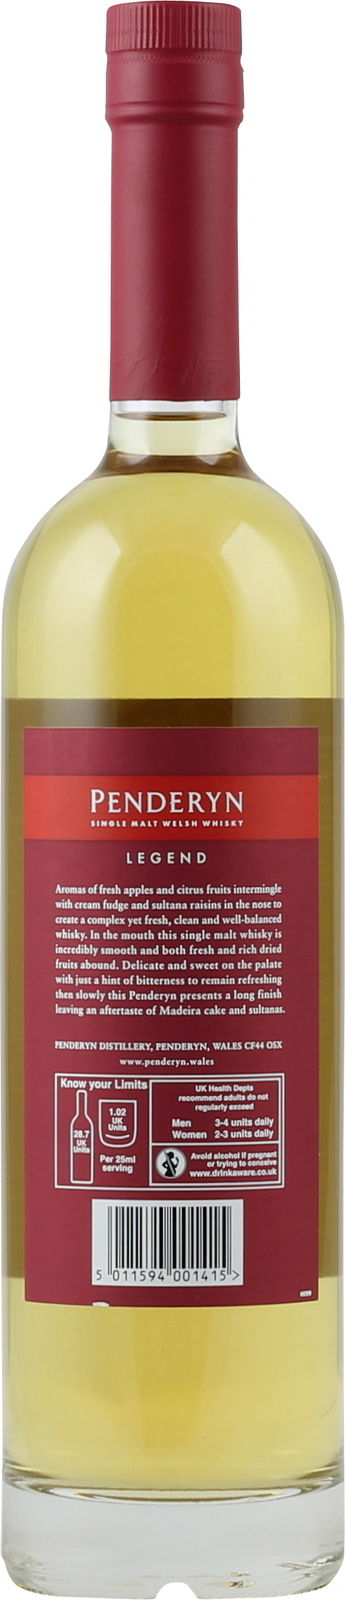 0,7 41% Liter Malt Welsh Penderyn Single Whiskey Legend